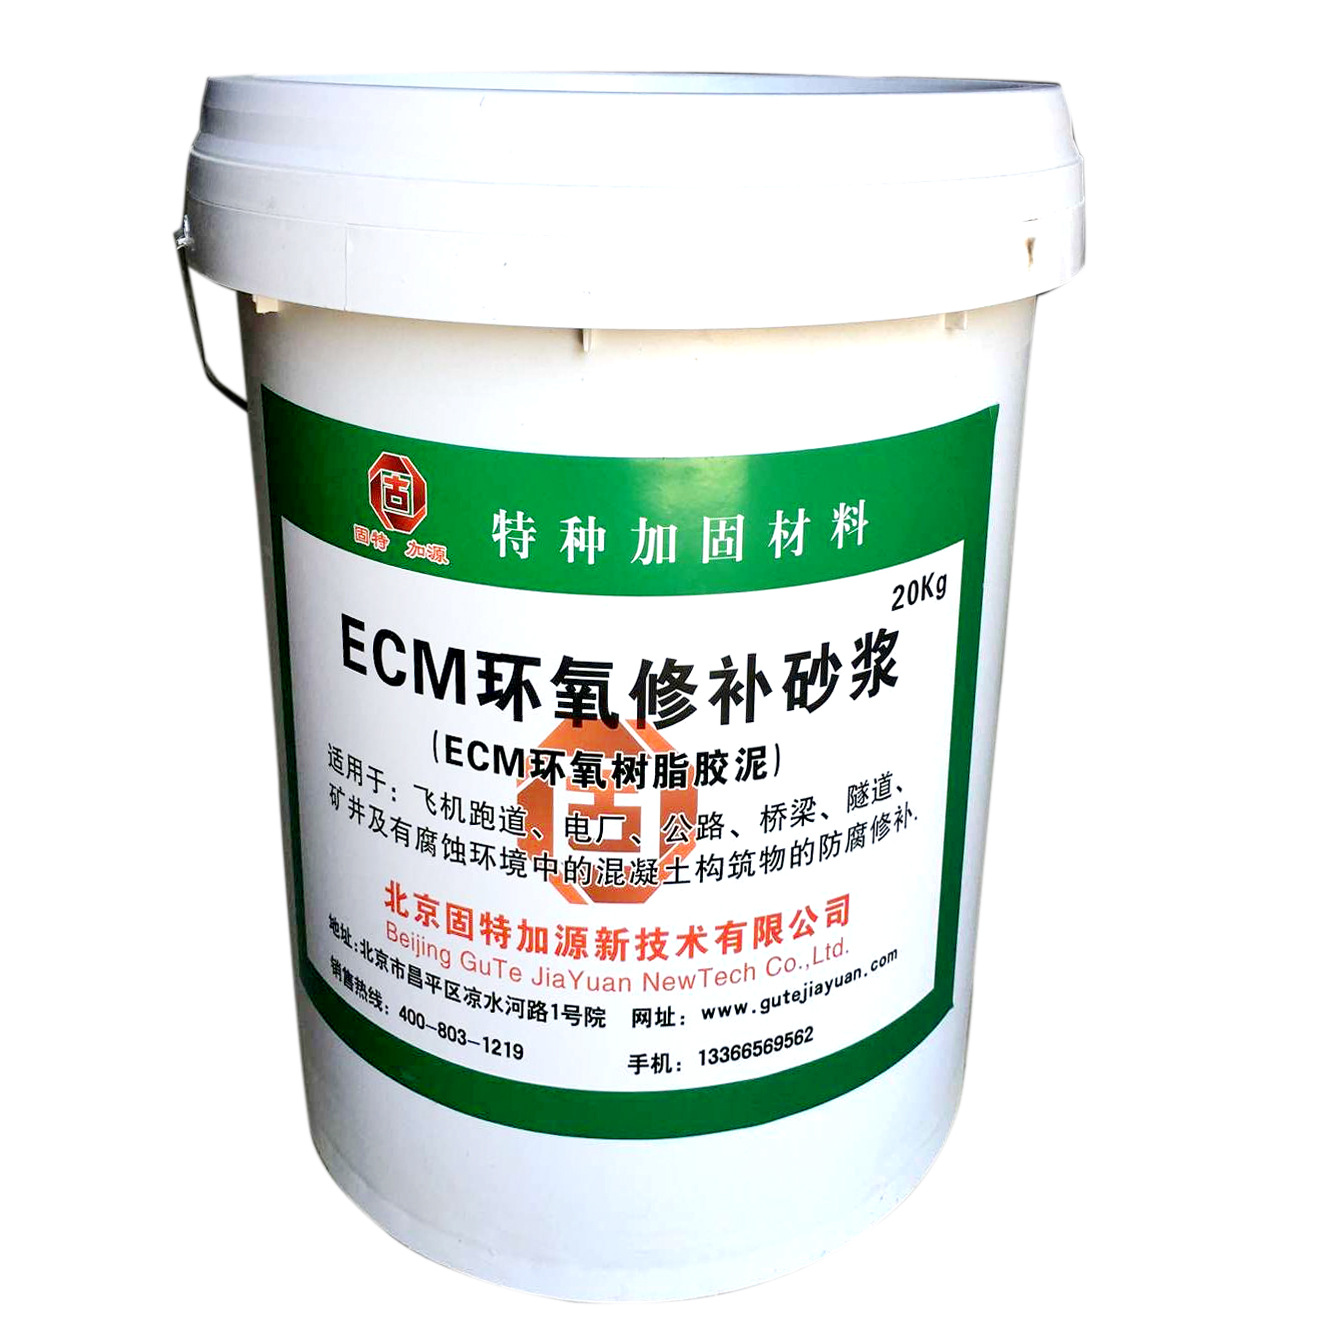 ecm环氧修补砂浆